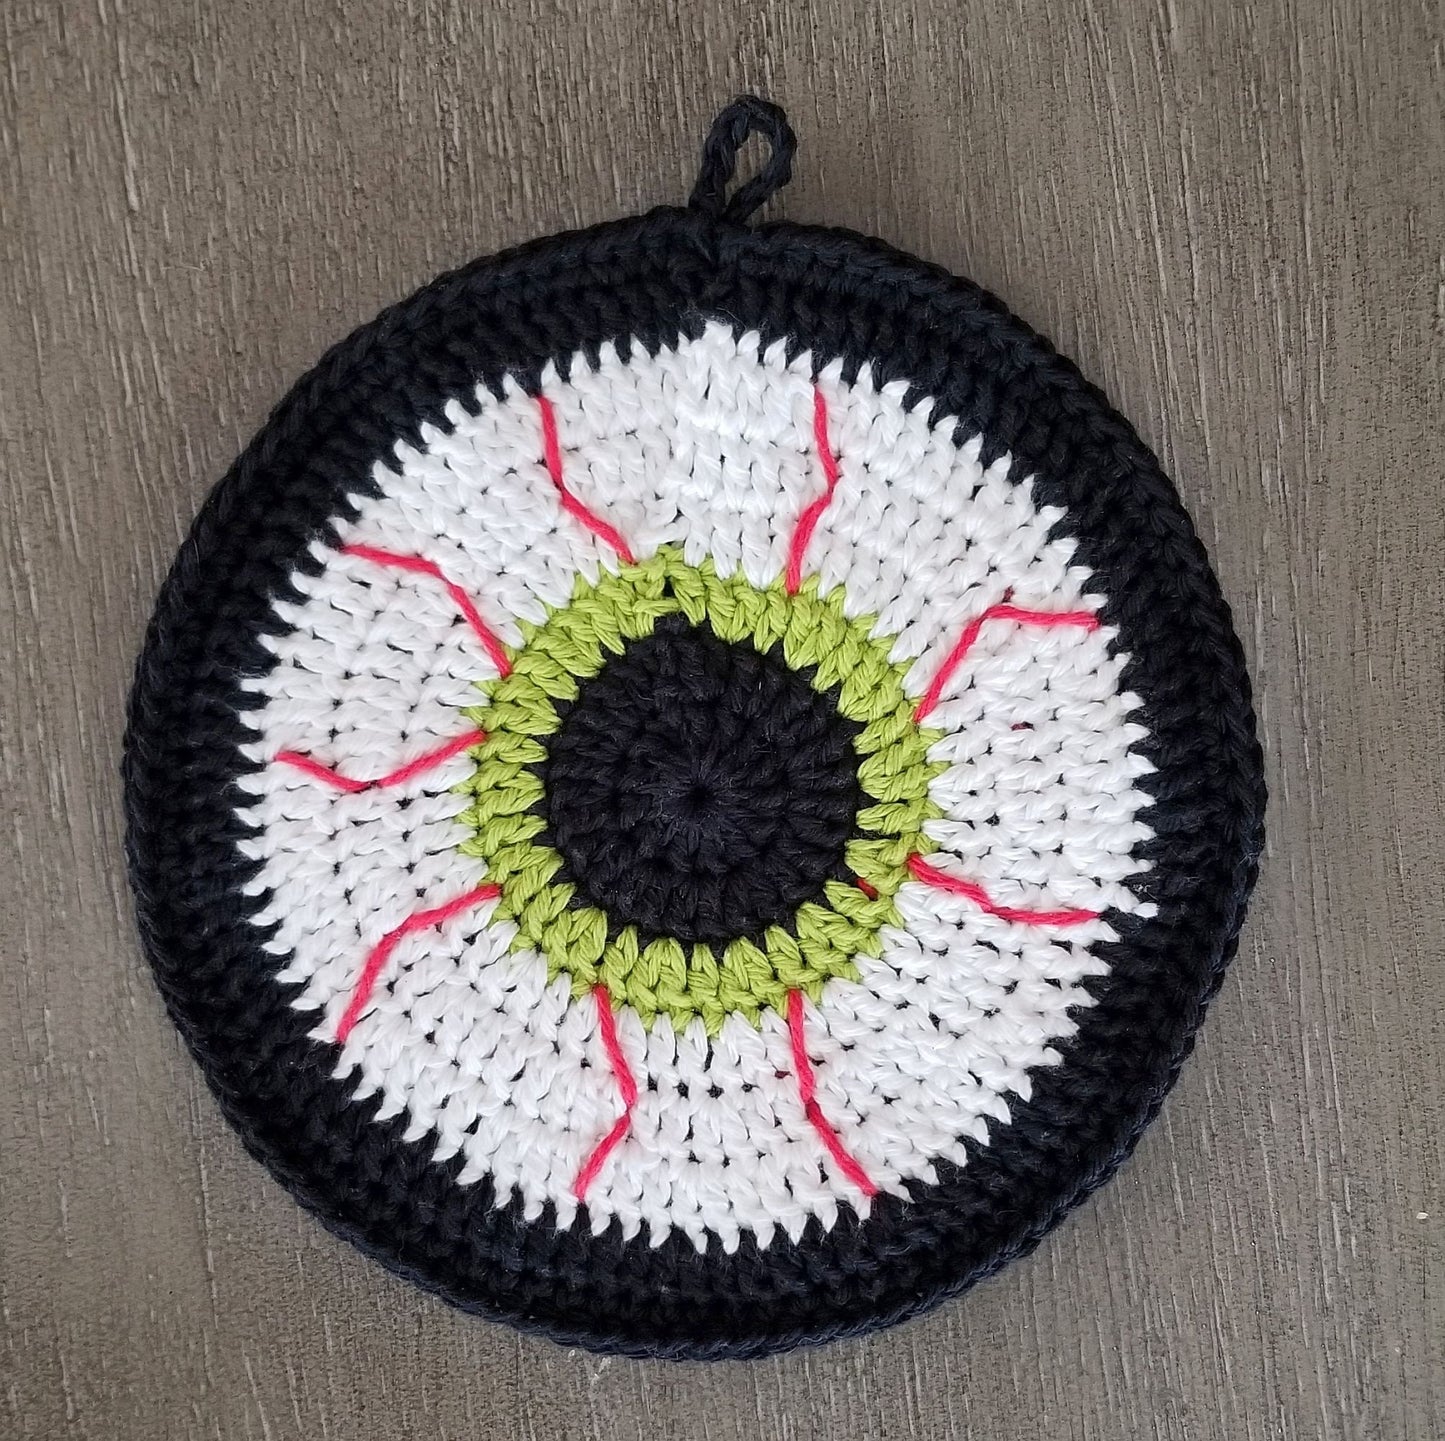 Bloodshot Eyeball Potholder Crochet Pattern